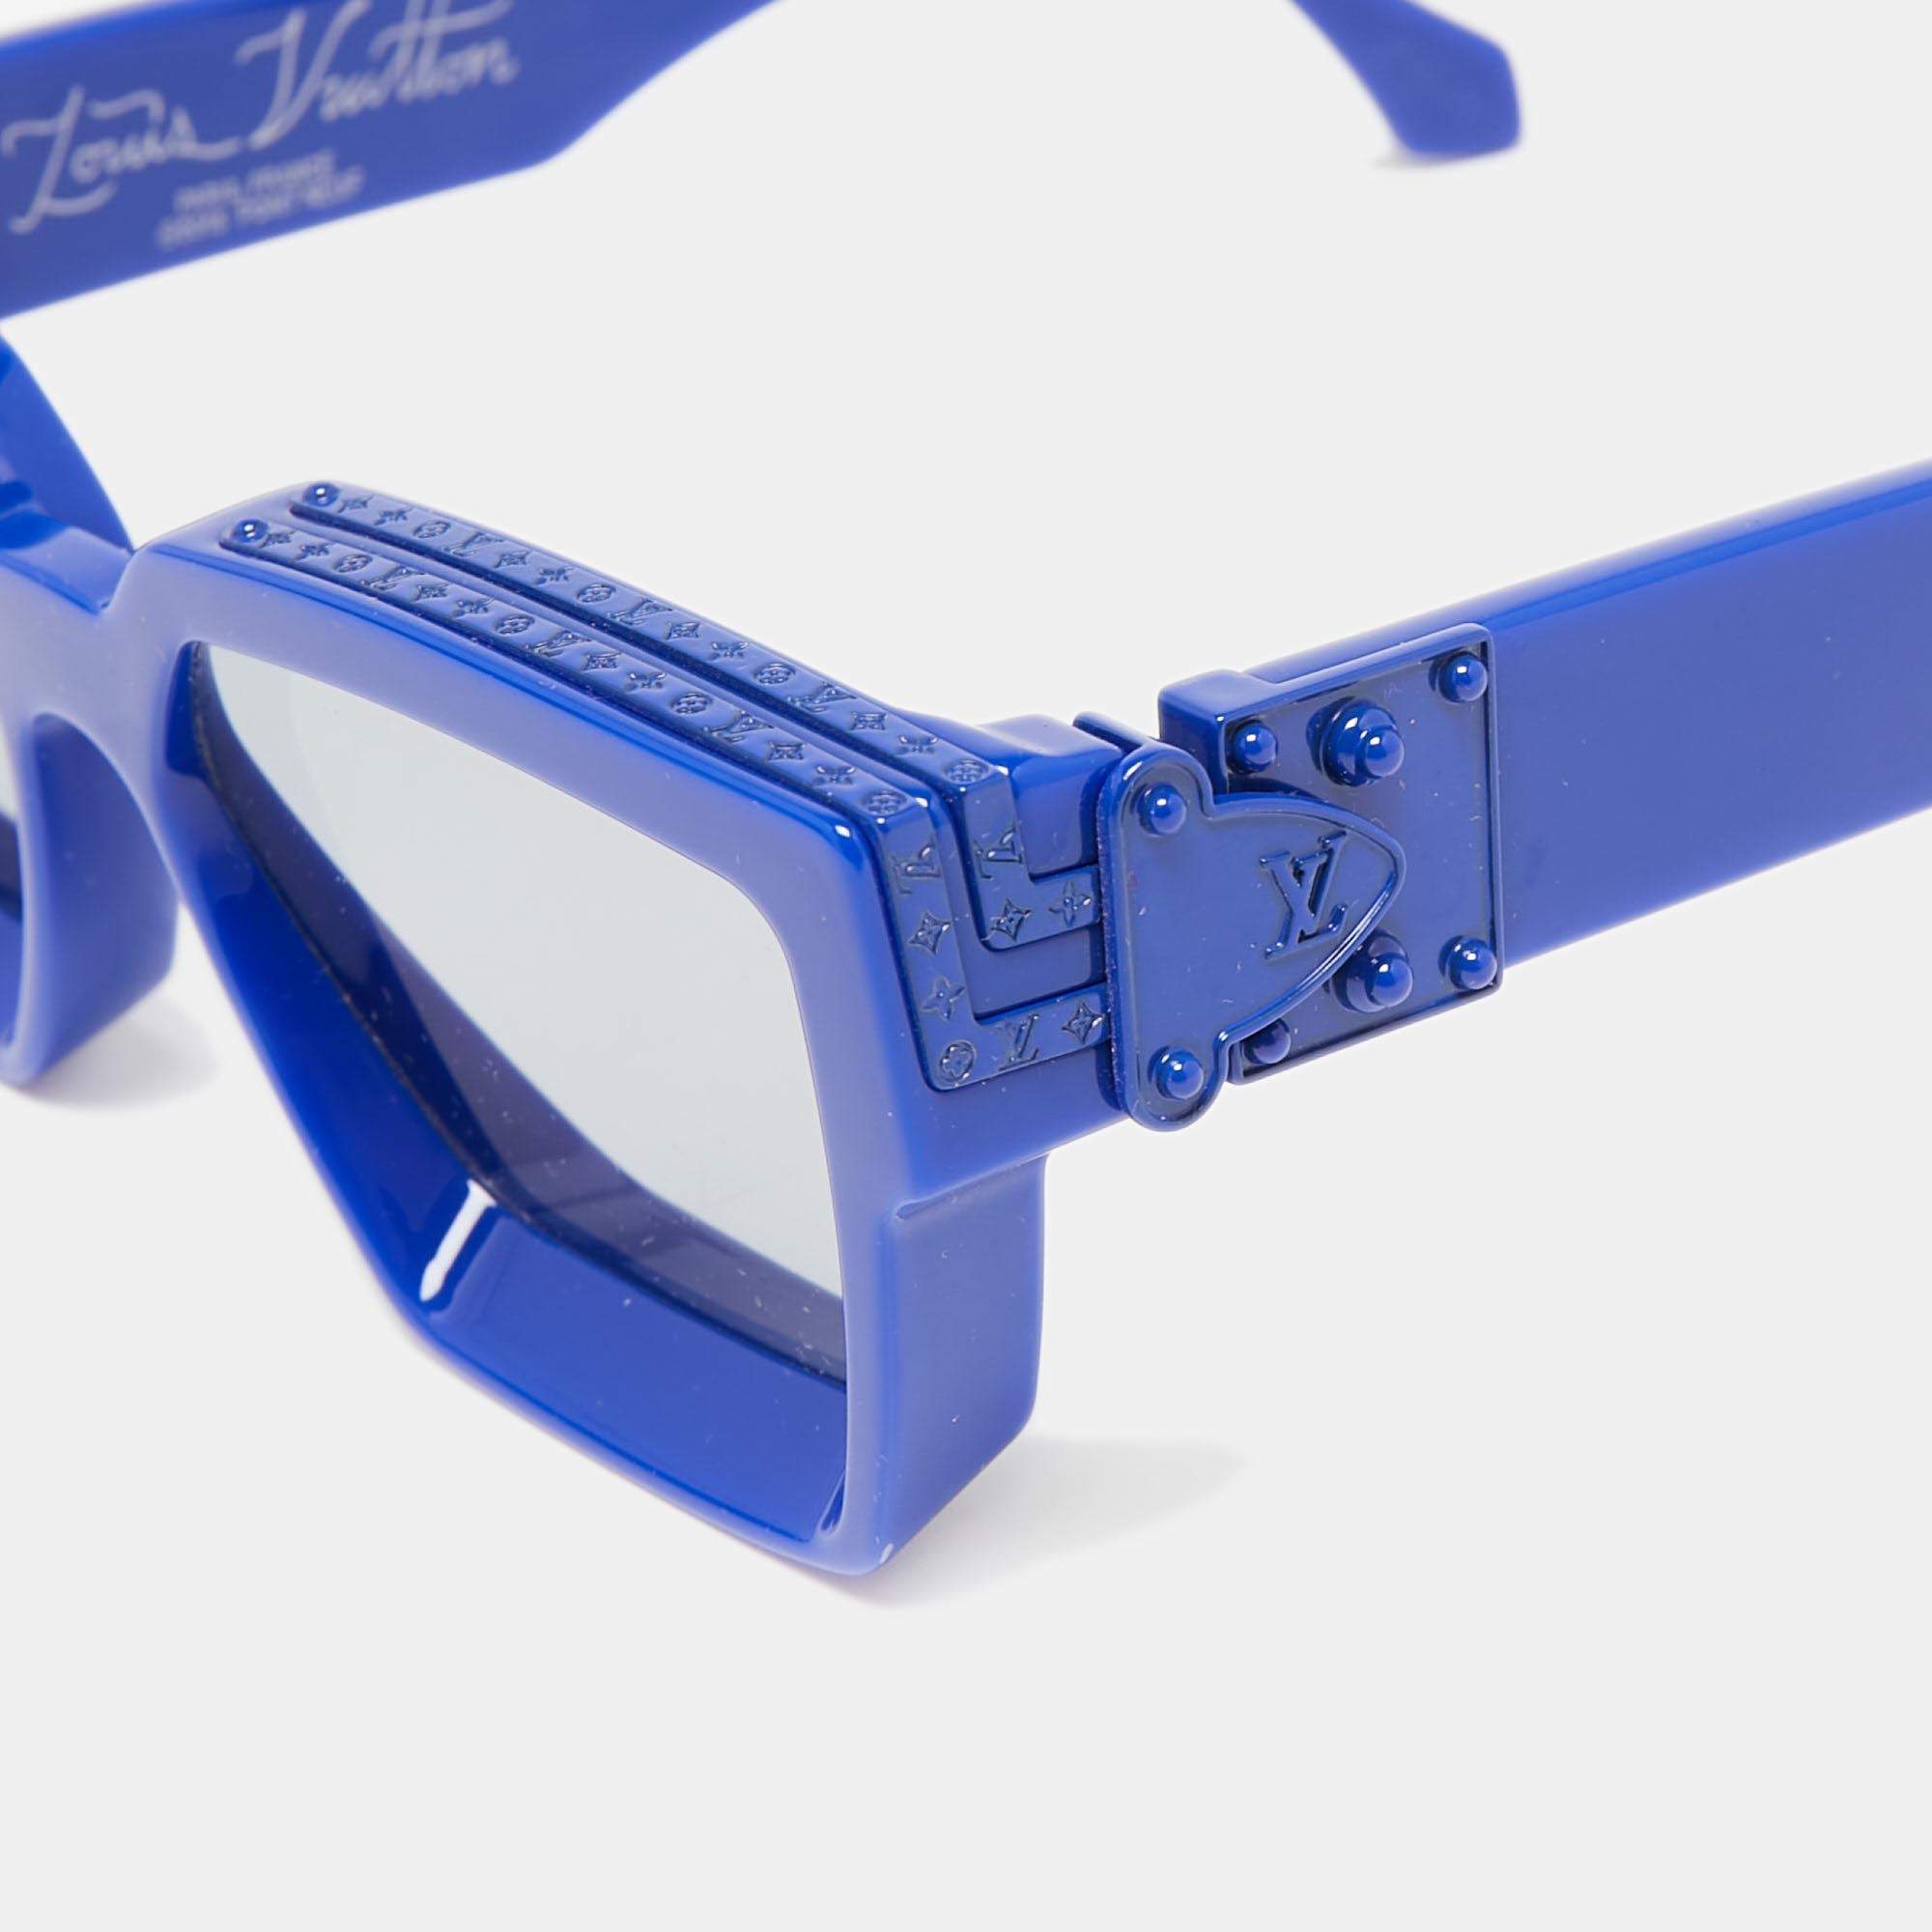 Louis Vuitton Transparent Millionaire Square Sunglasses - Clear Sunglasses,  Accessories - LOU484911